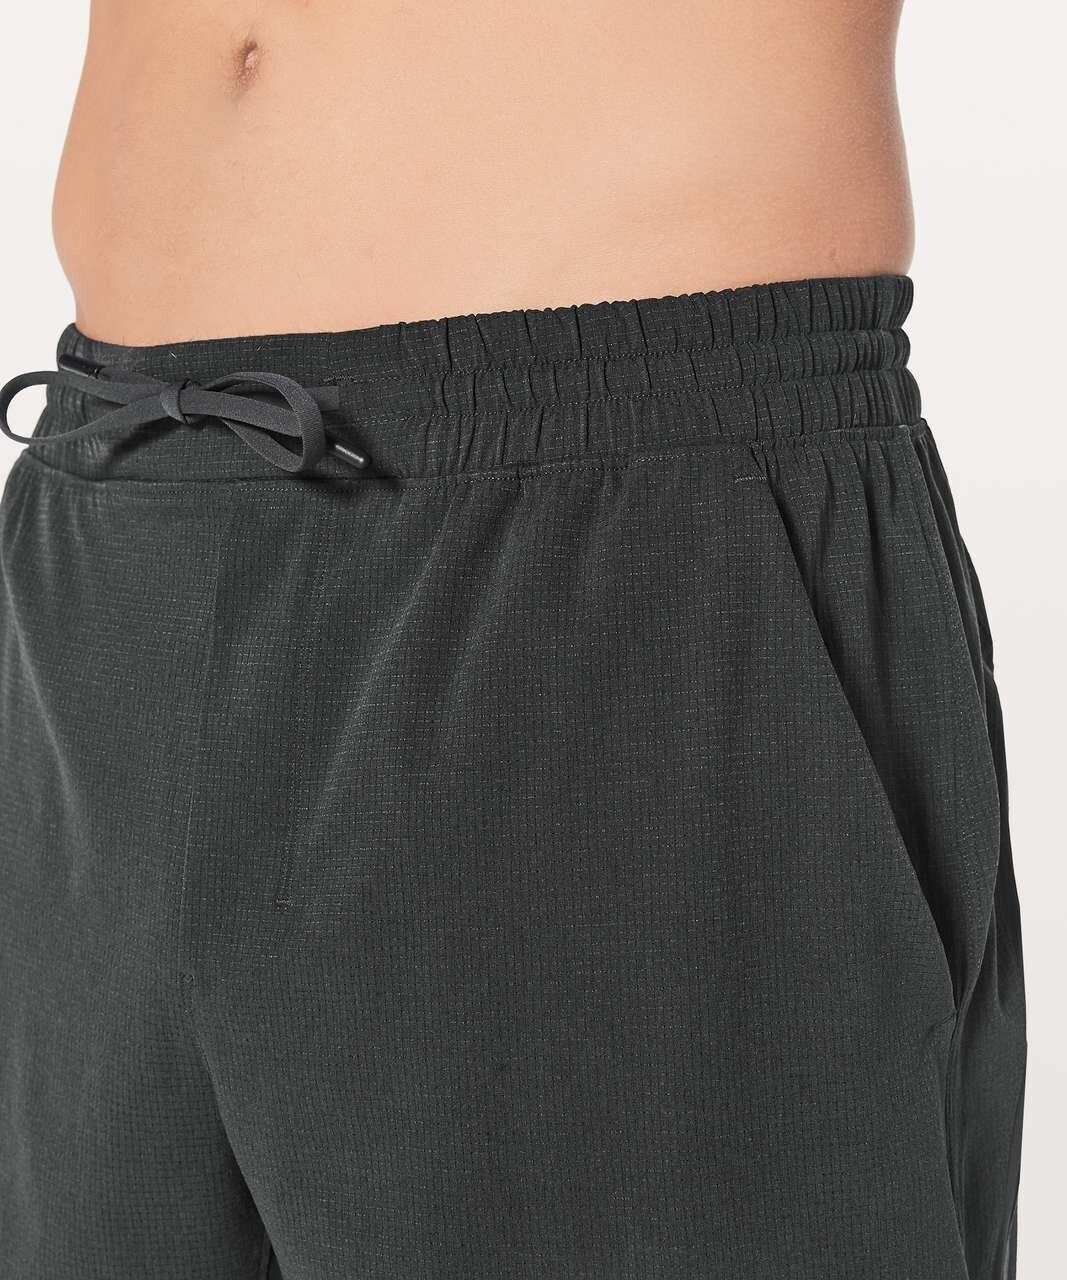 Lululemon Men’s S Pace Breaker Shorts 8.5” Swift … - image 4